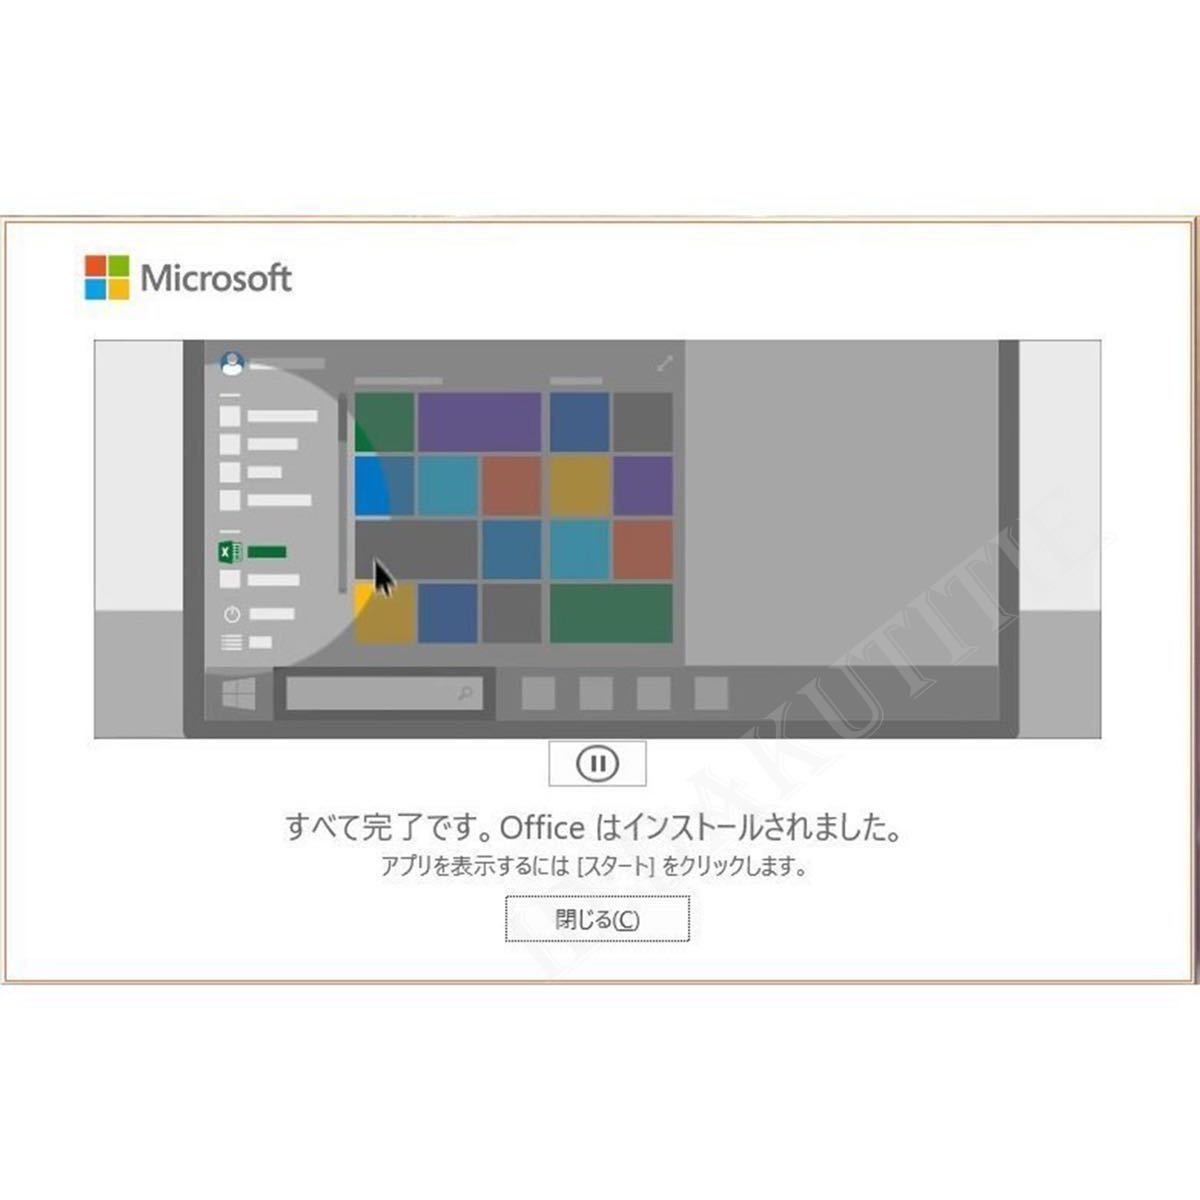 【5台分】Microsoft Office 2021 Professional Plus 永年正規保証プロダクトキー 32/64bit対応 Access Word Excel PowerPoint 日本語4